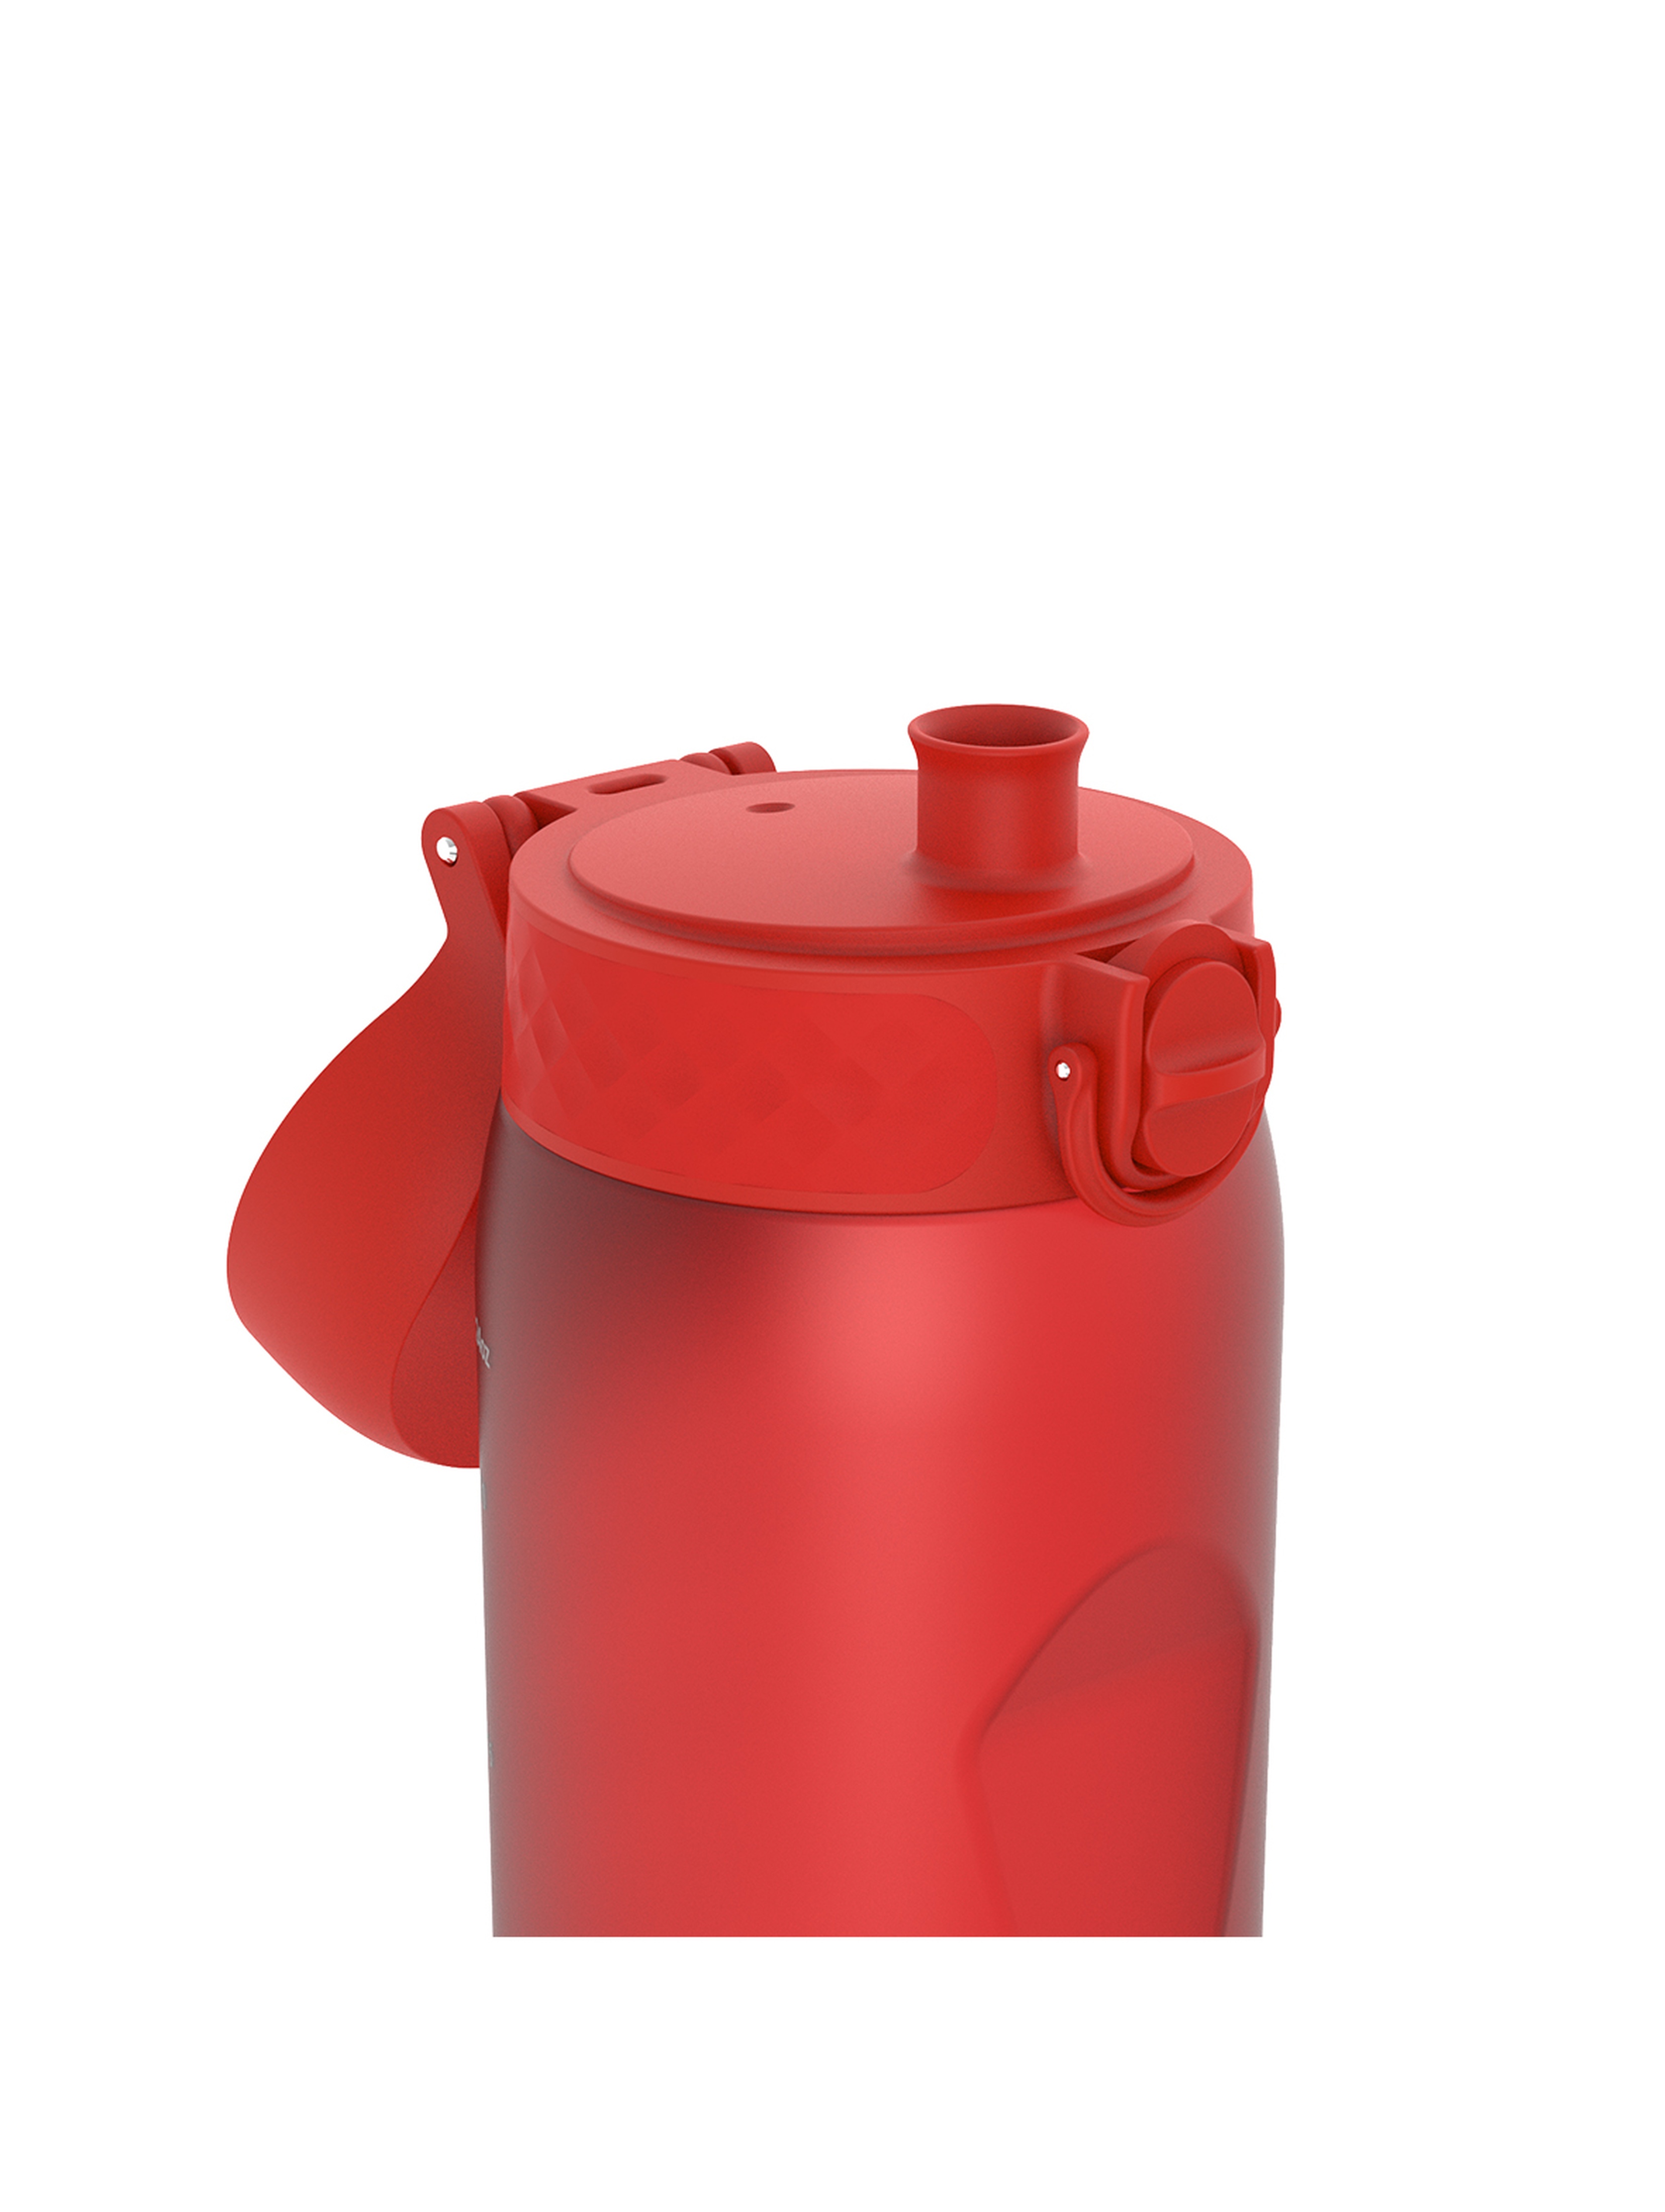 Butelka na wodę ION8 BPA Free Red 750ml czerwona